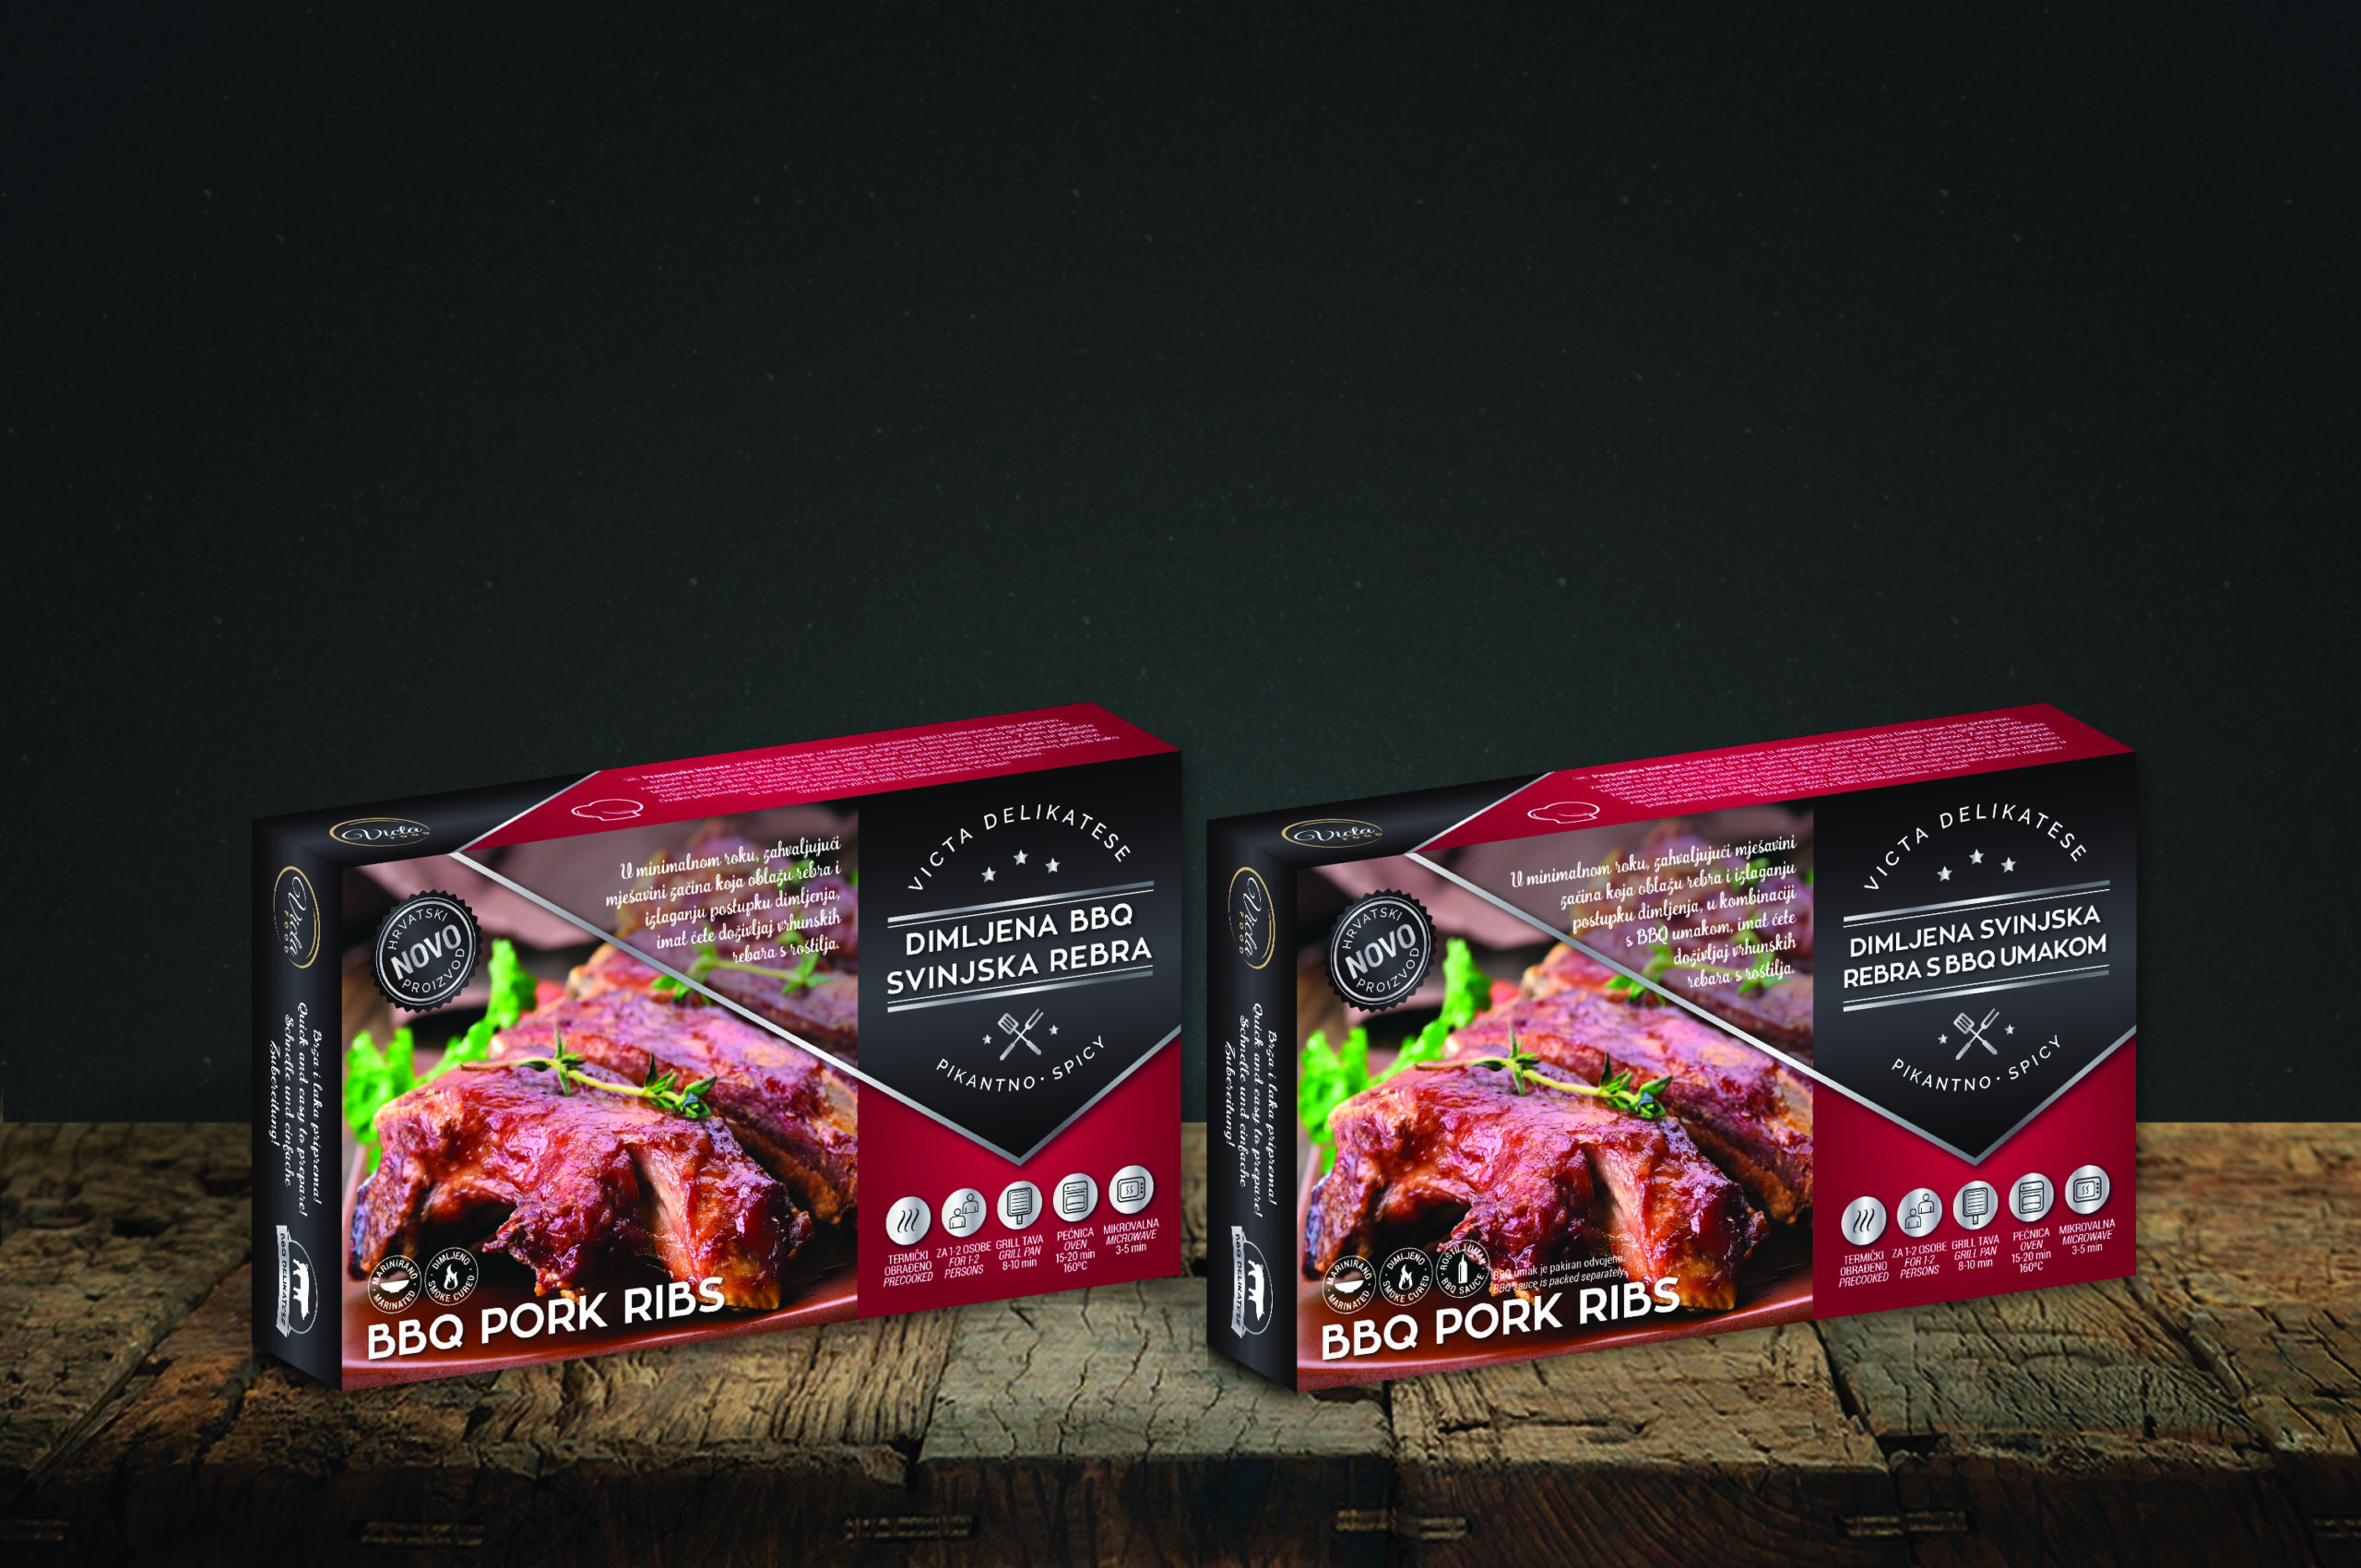 Na slici se nalaze sva pakovanja BBQ Pork Ribs proizvoda od tvrtke Victa Food. Proizvodi se nalaze na drvenoj podlozi sa tamnosivom pozadinom. Pakiranja su crvene i tamnosive boje sa bijelim fontom.